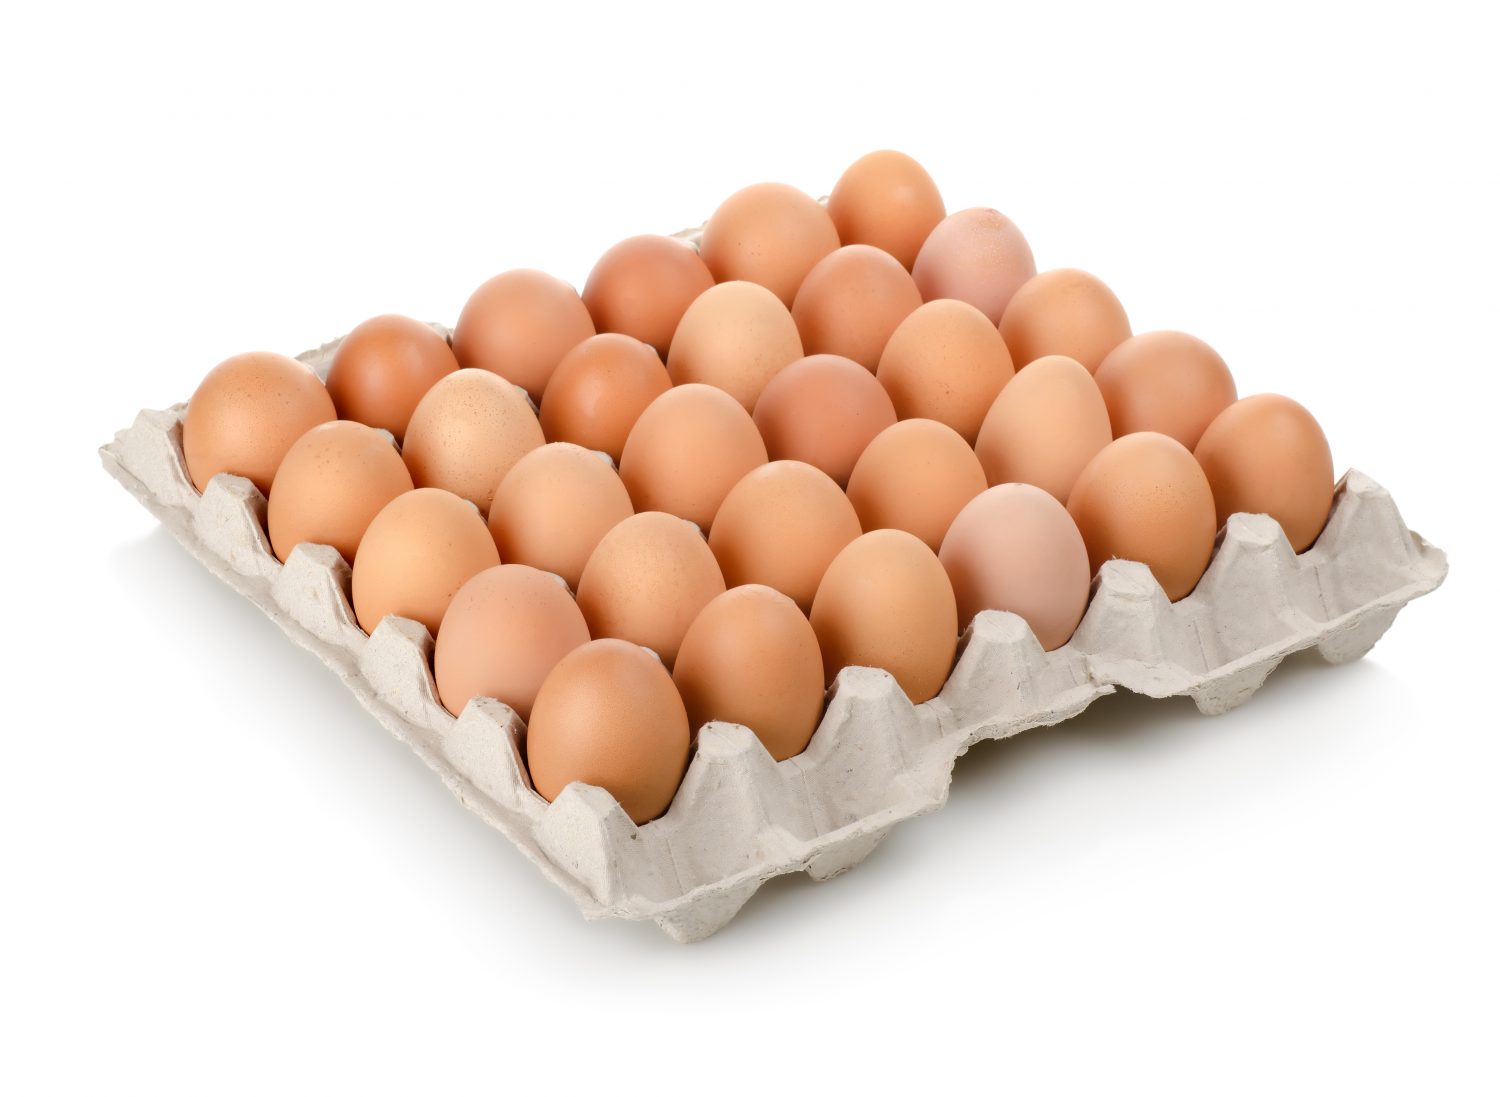 Eggs In A Carton